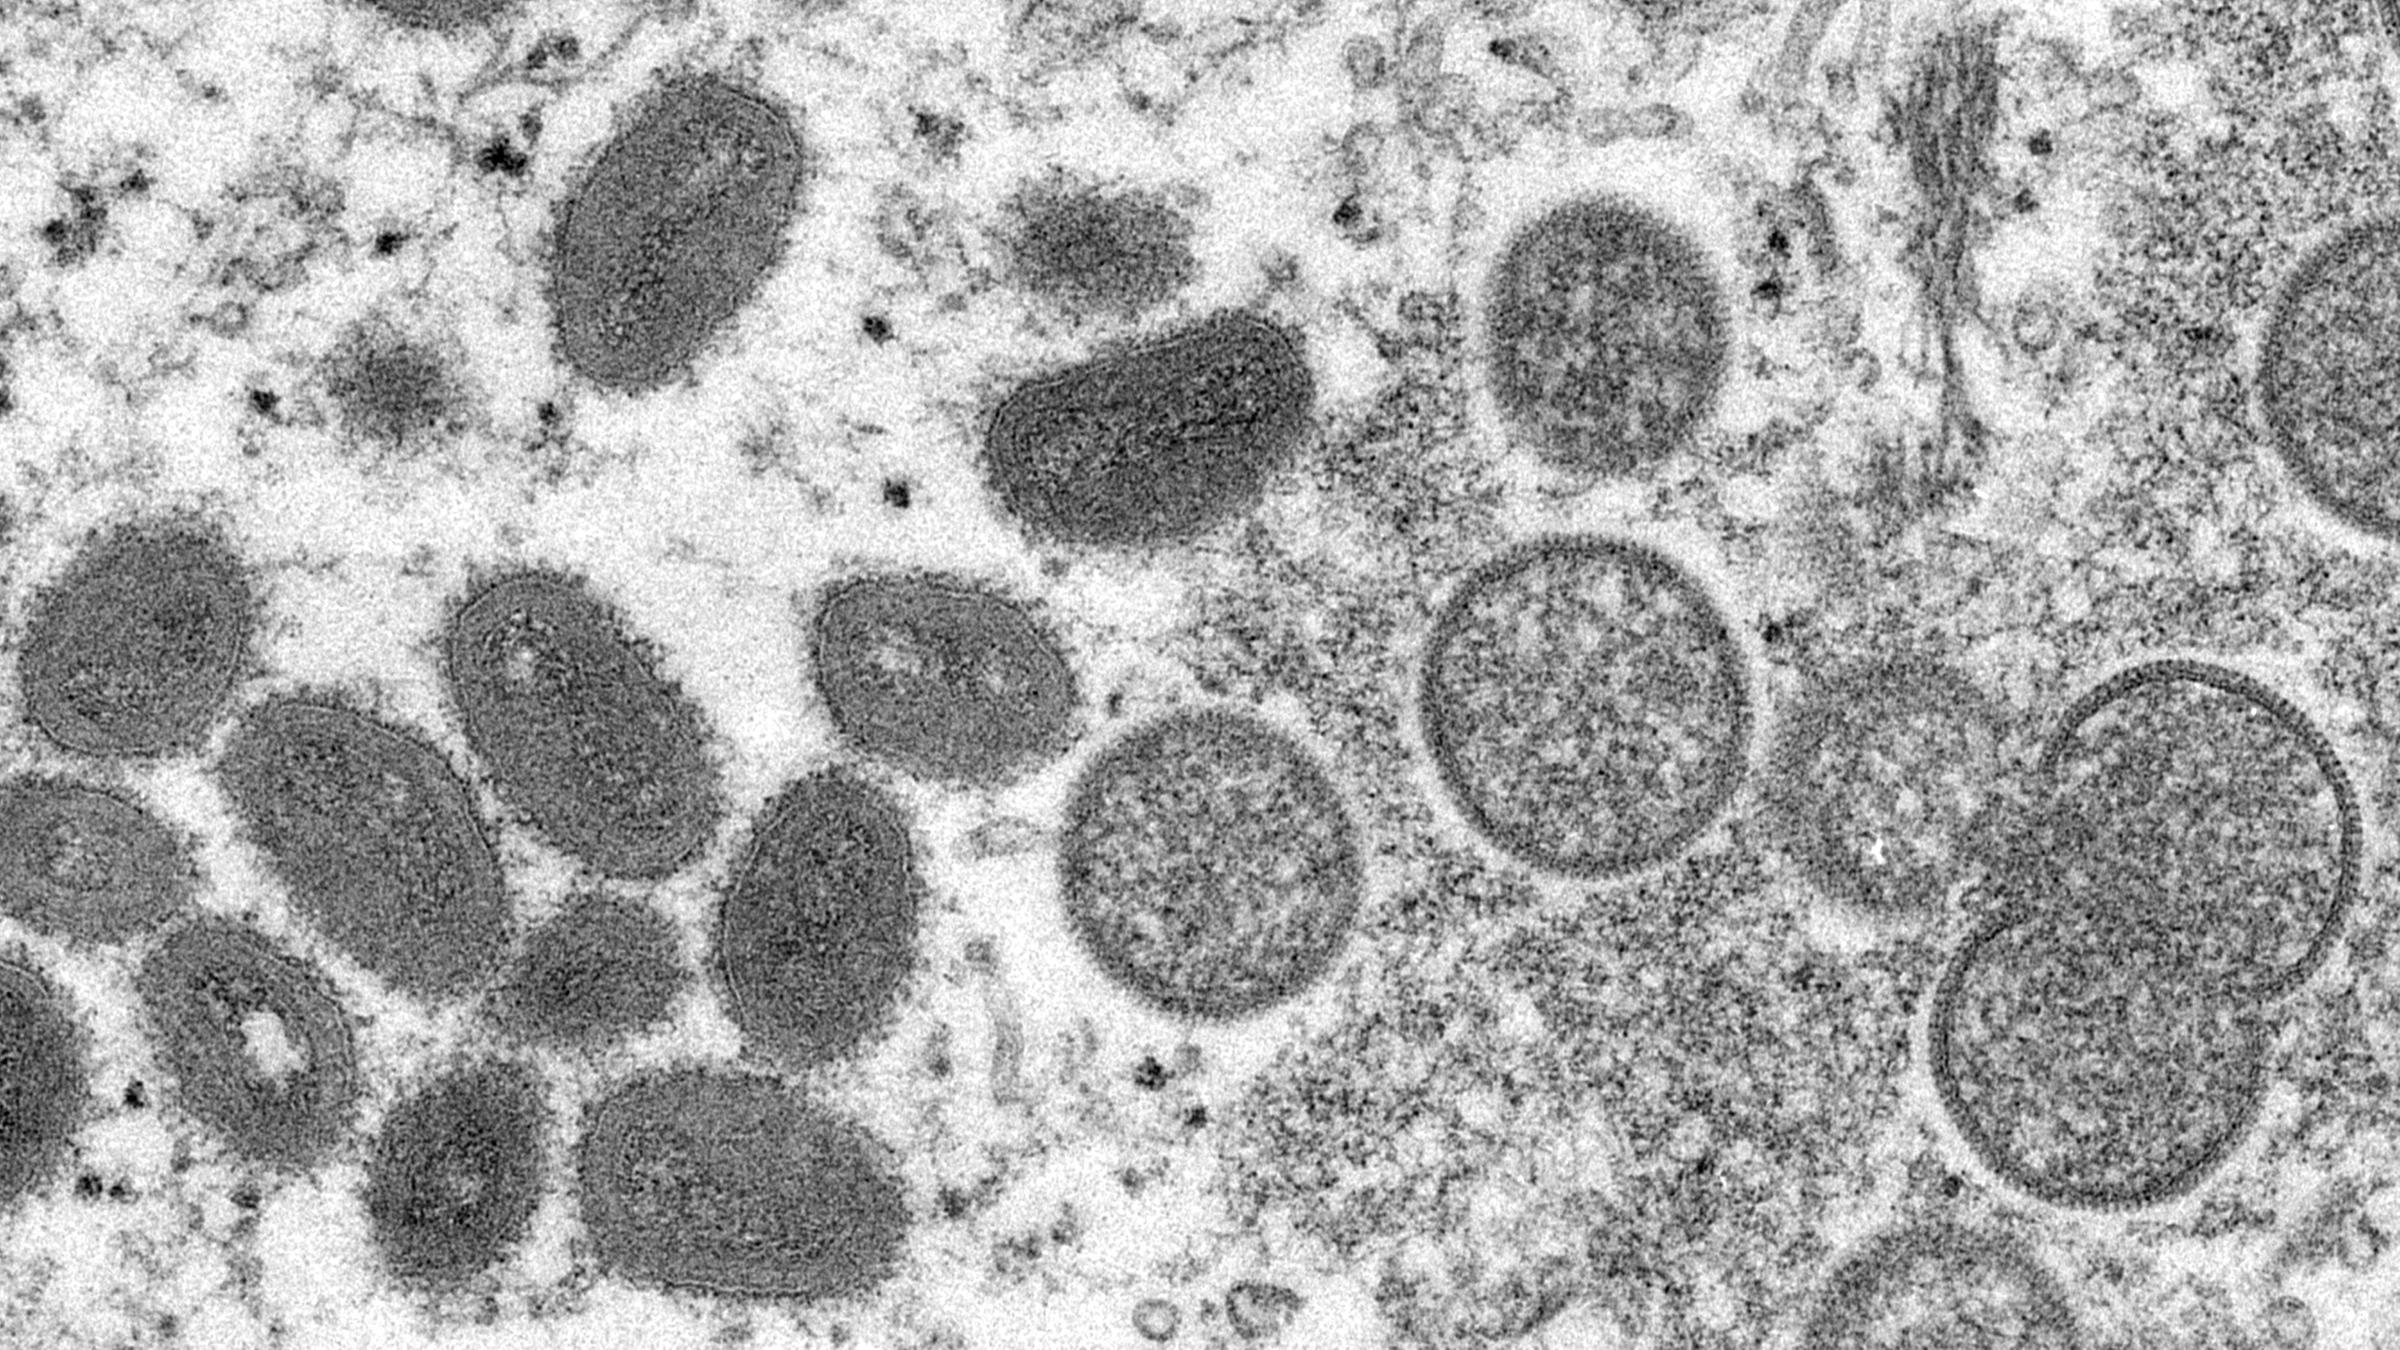 Diese elektronenmikroskopische Aufnahme aus dem Jahr 2003, die von den Centers for Disease Control and Prevention zur Verfügung gestellt wurde, zeigt reife, ovale Affenpockenviren und kugelförmige unreife Virionen, die aus einer menschlichen Hautprobe im Zusammenhang mit dem Präriehundeausbruch von 2003 stammt. 